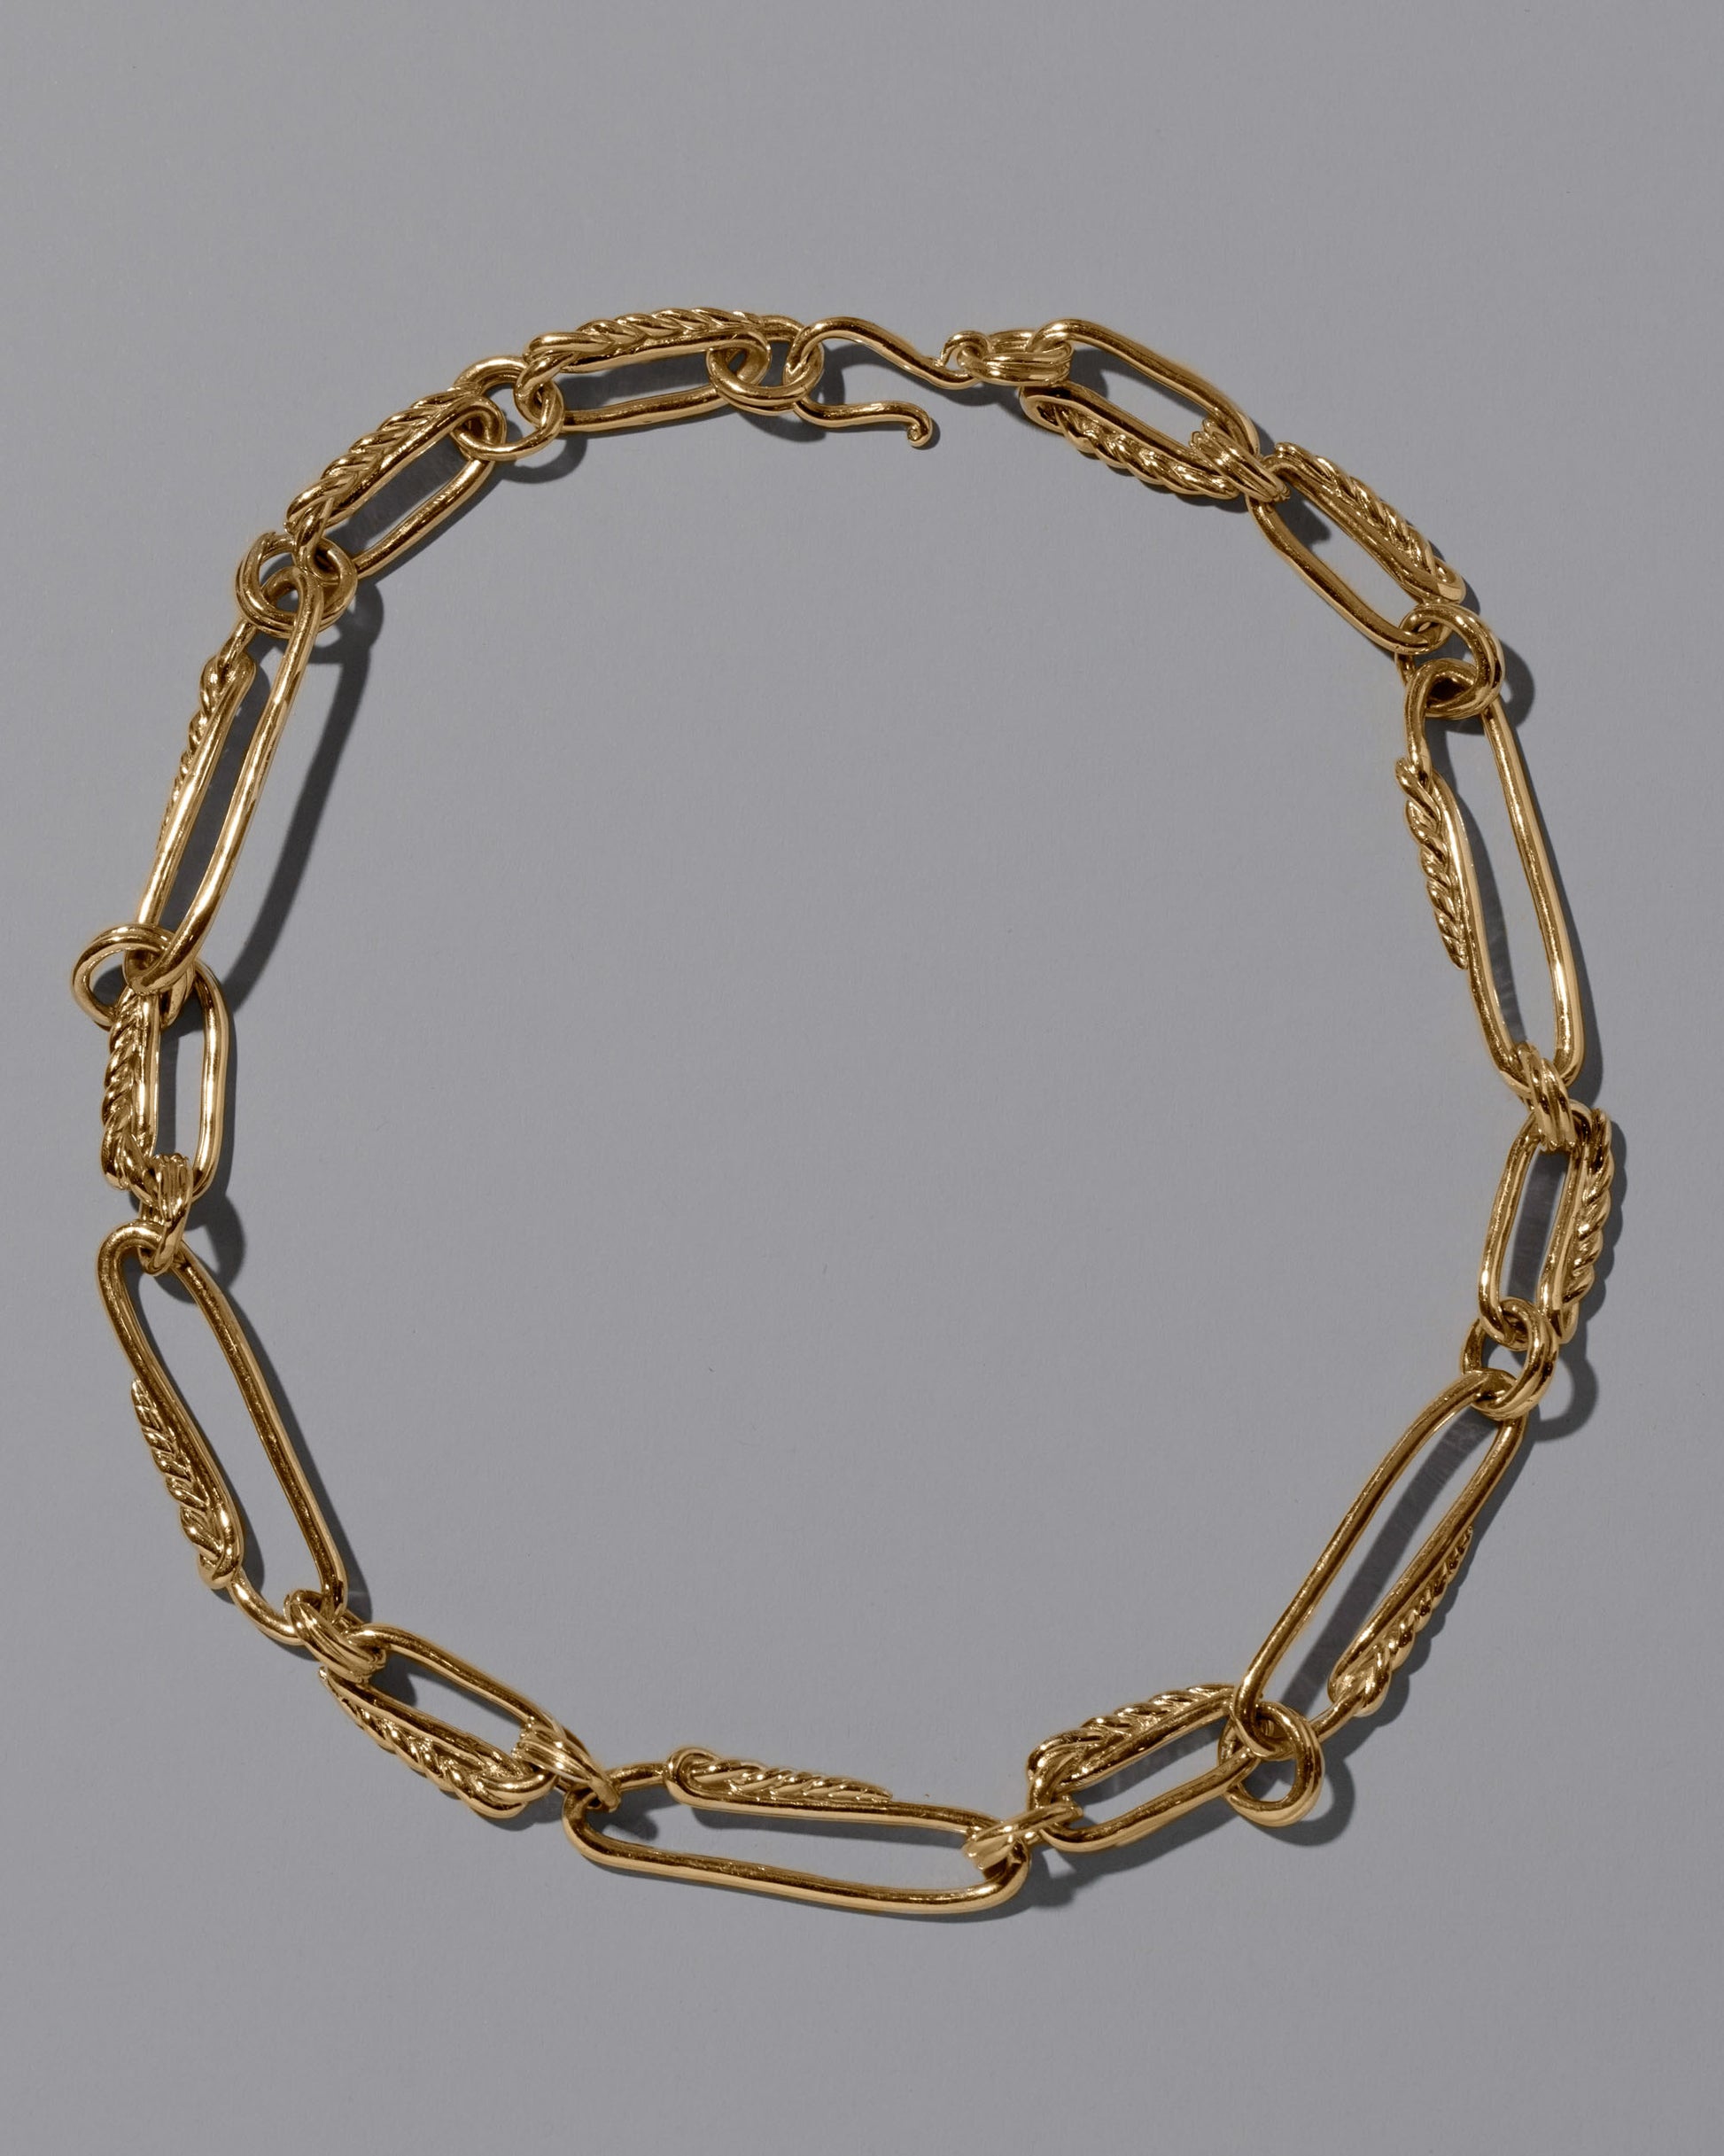 CRZM 22k Gold Ophiolite Necklace on light color background.